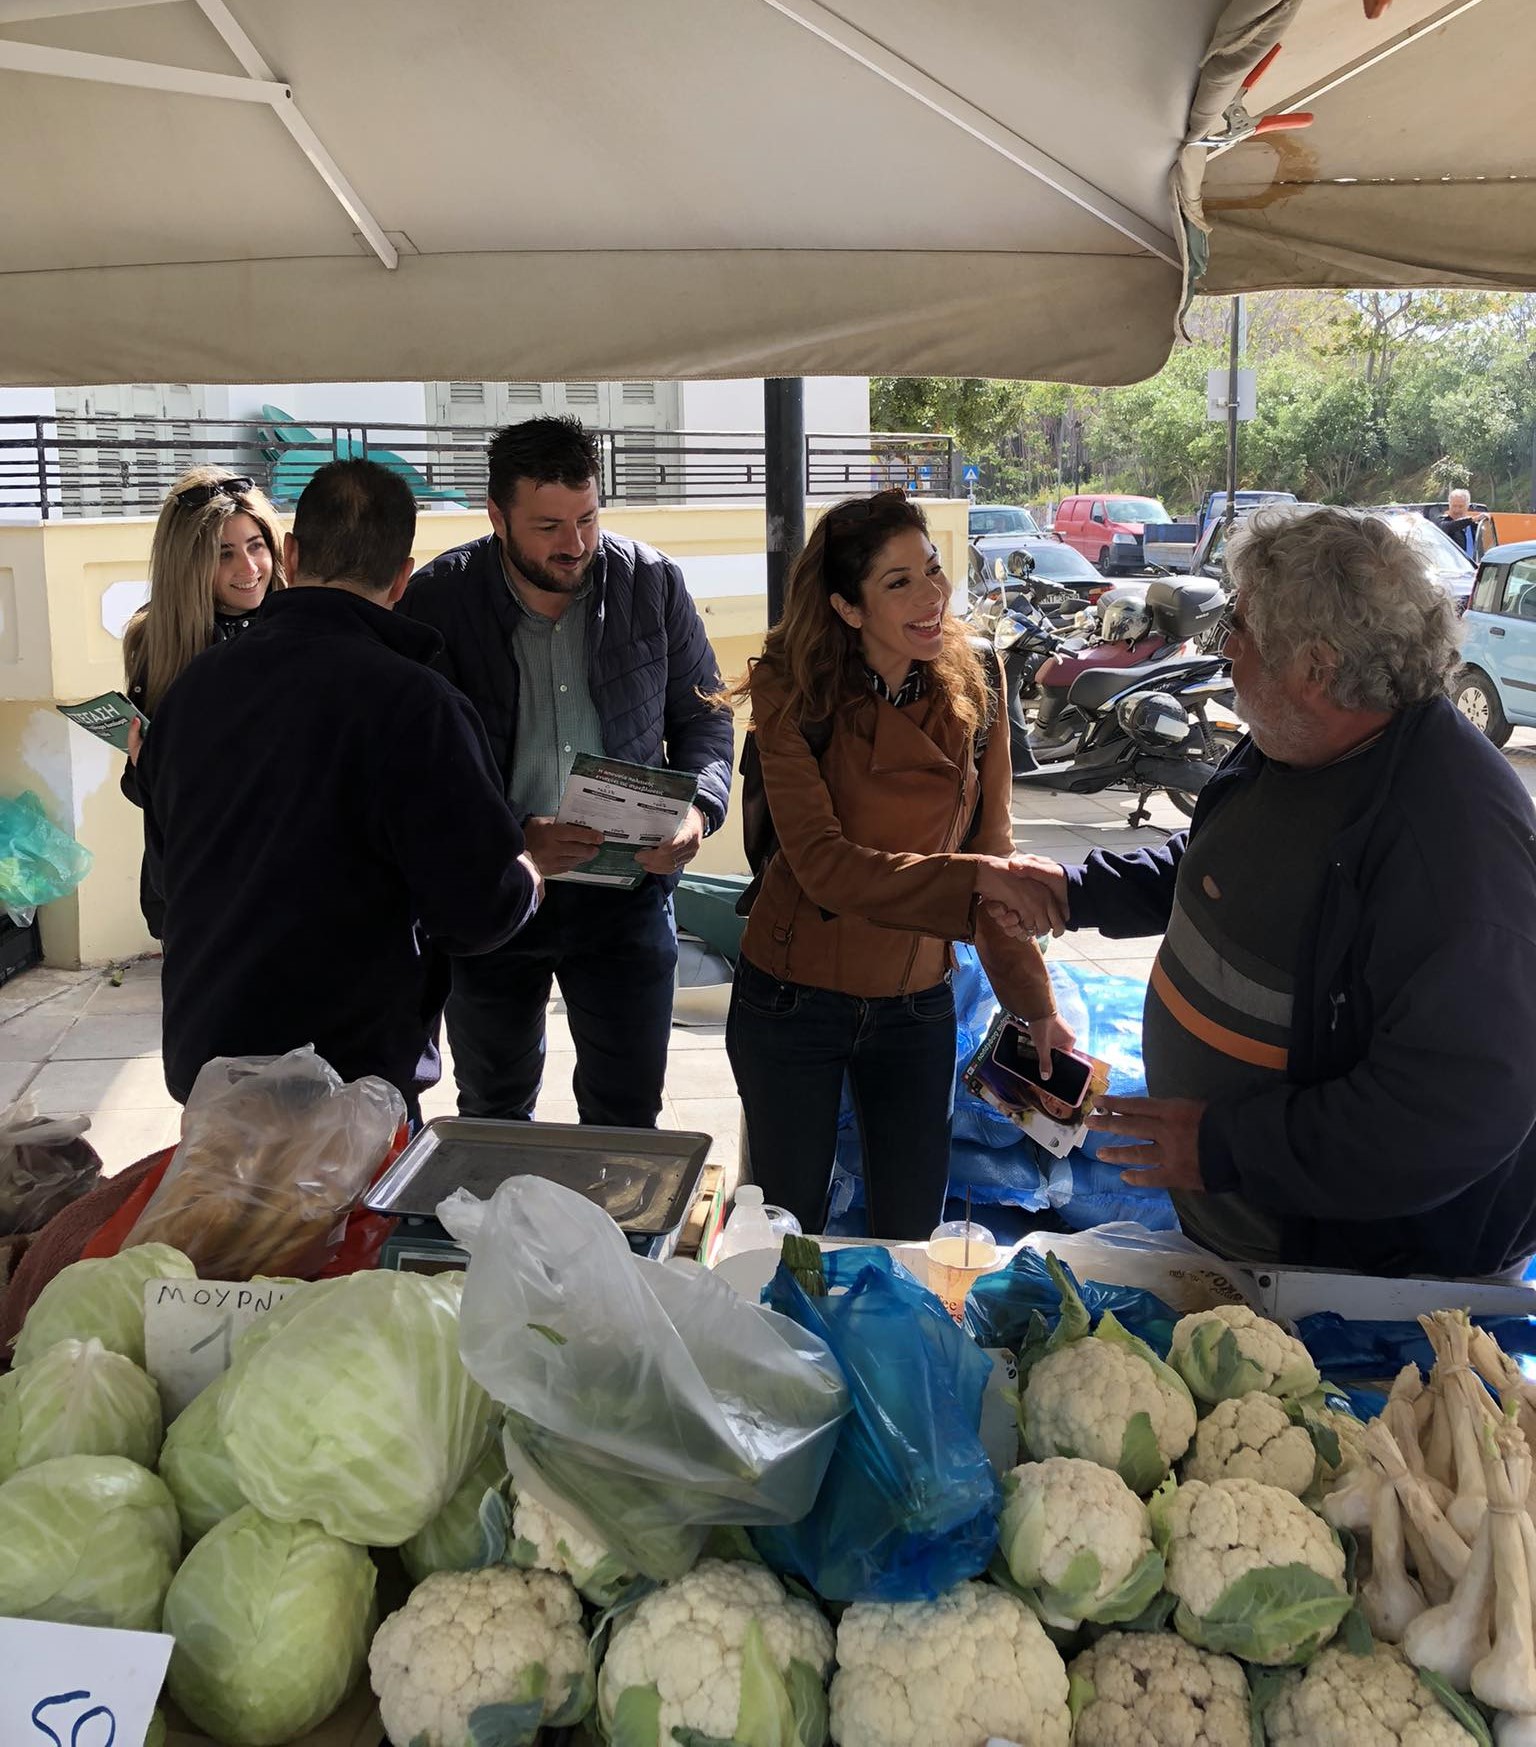 Χανιά: Στη λαϊκή αγορά του Σαββάτου μέλη της ΝE ΠΑΣΟΚ μαζί με την Μαρία Δαφέρμου